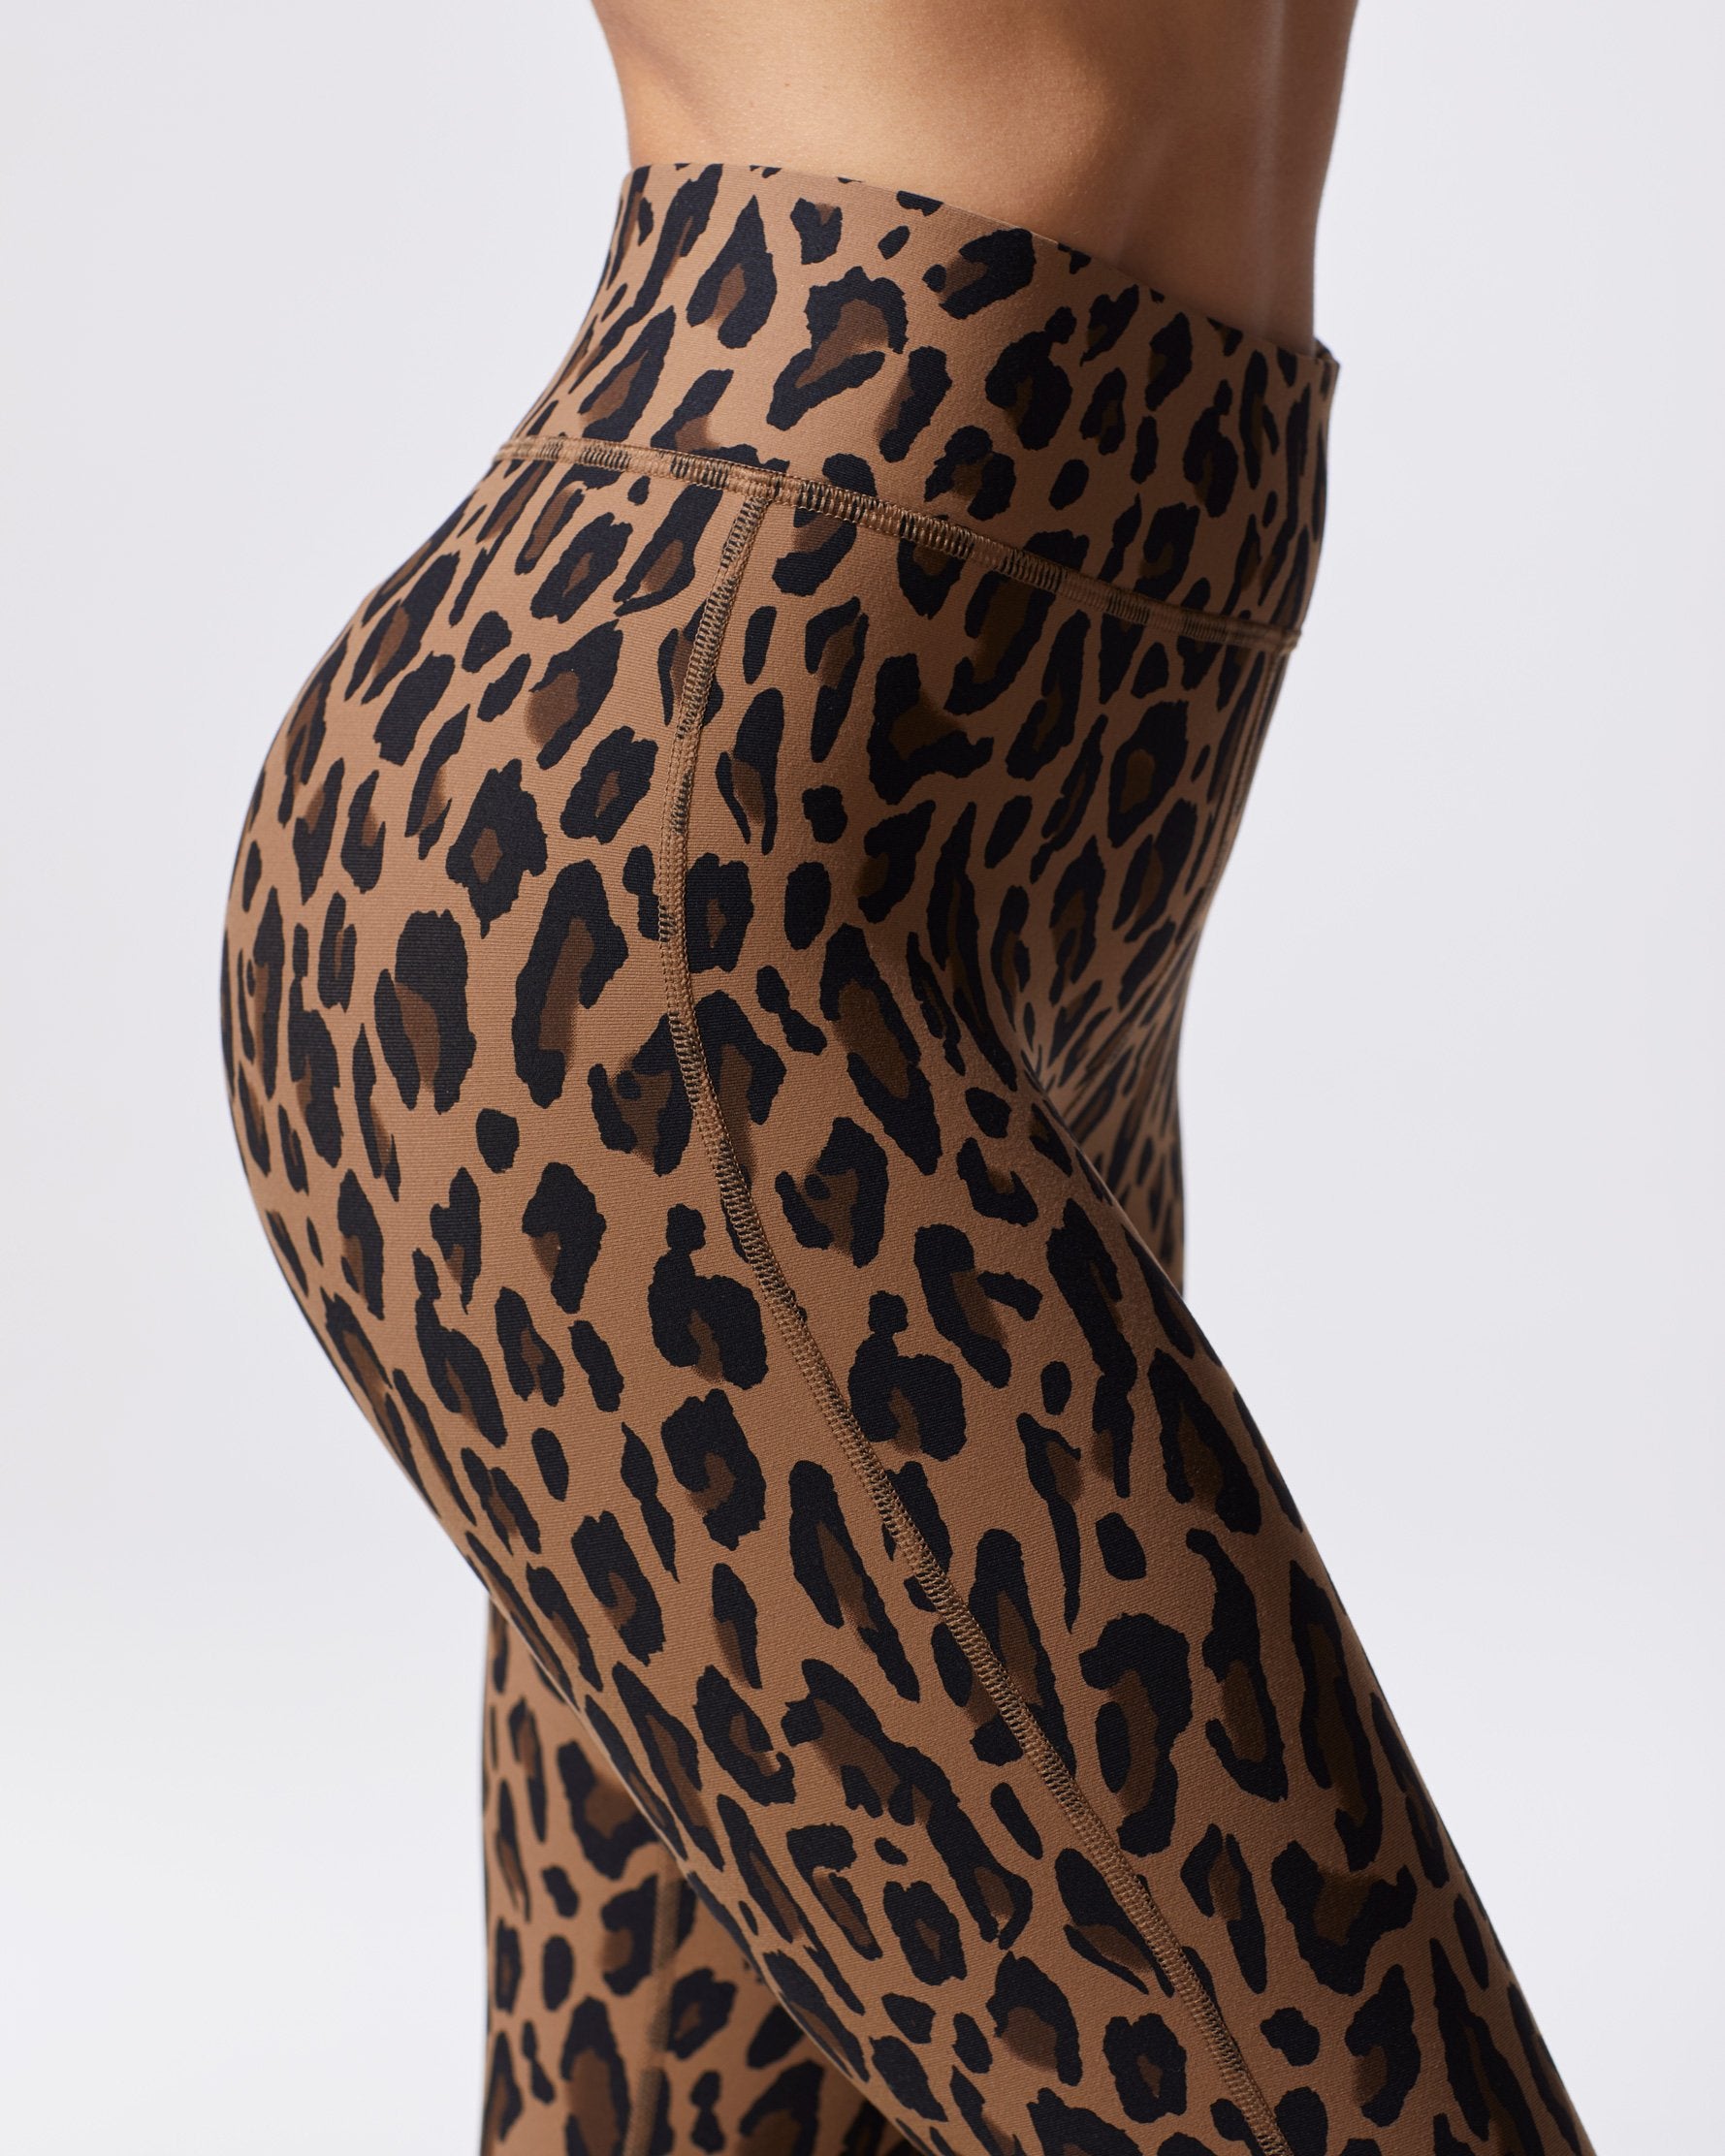 Verve Legging - Red Leopard